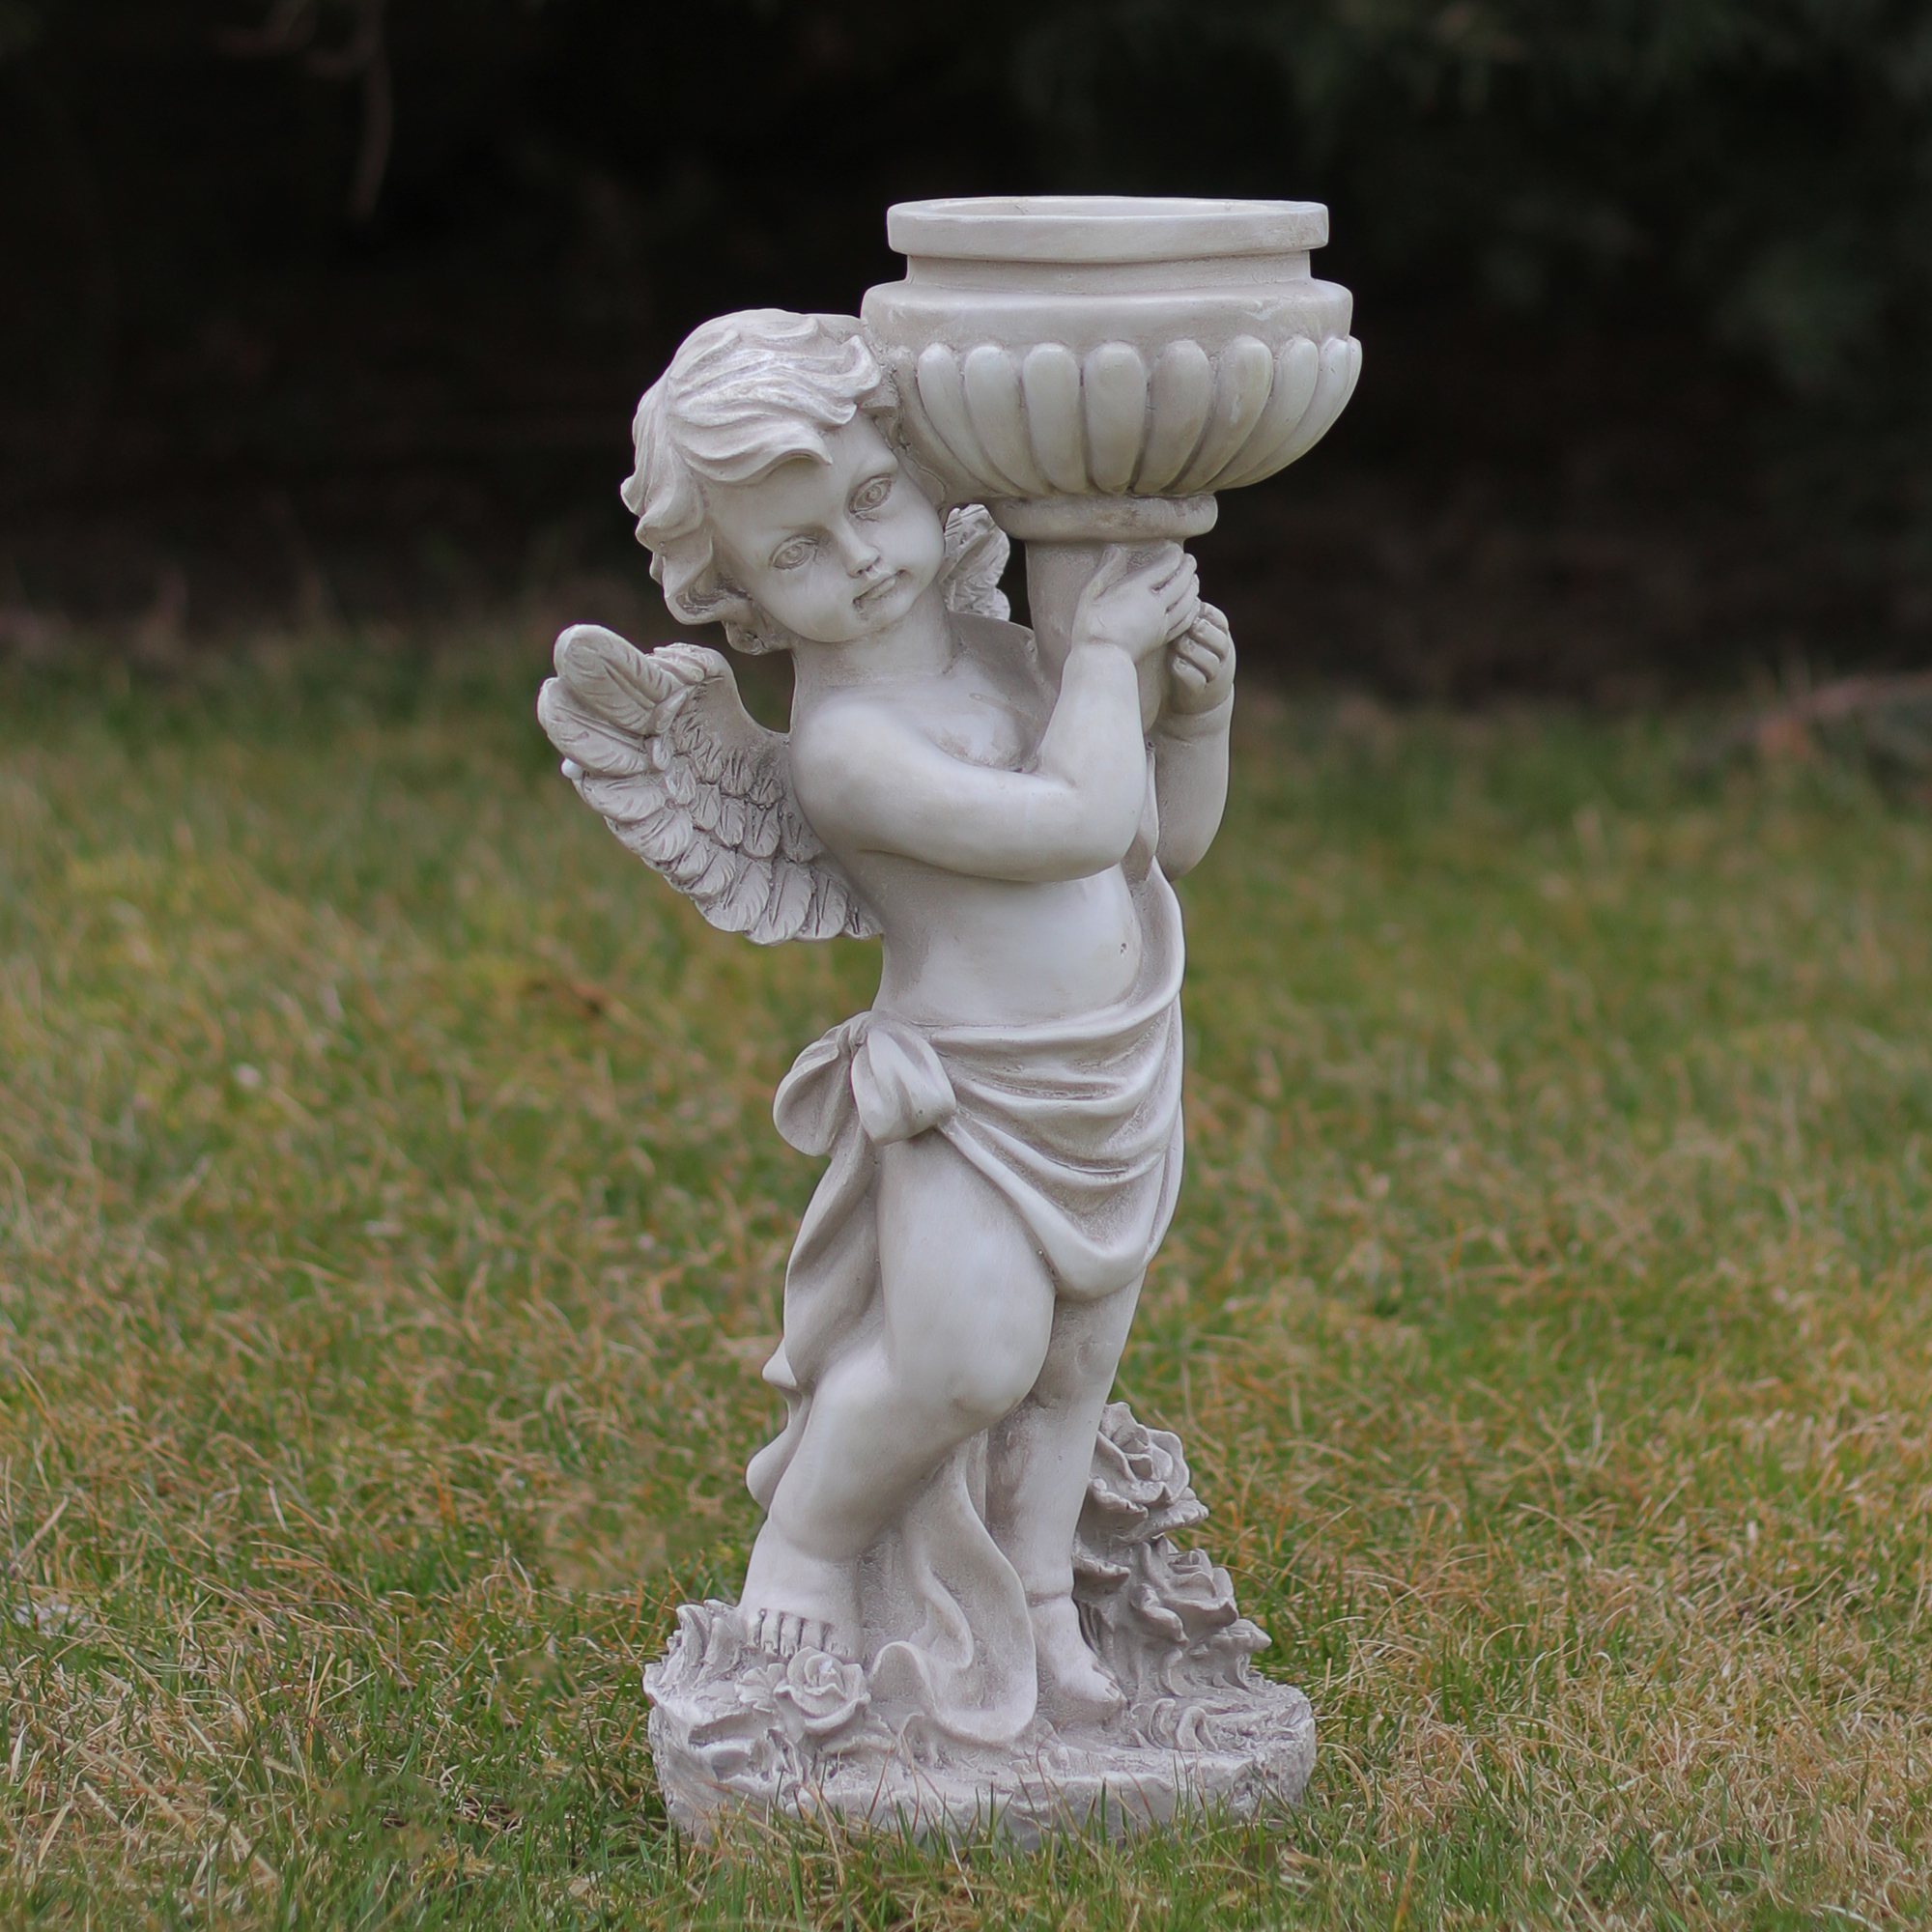 17" Left Facing Cherub Holding a Bird Bath Outdoor Garden Statue - image 2 of 2